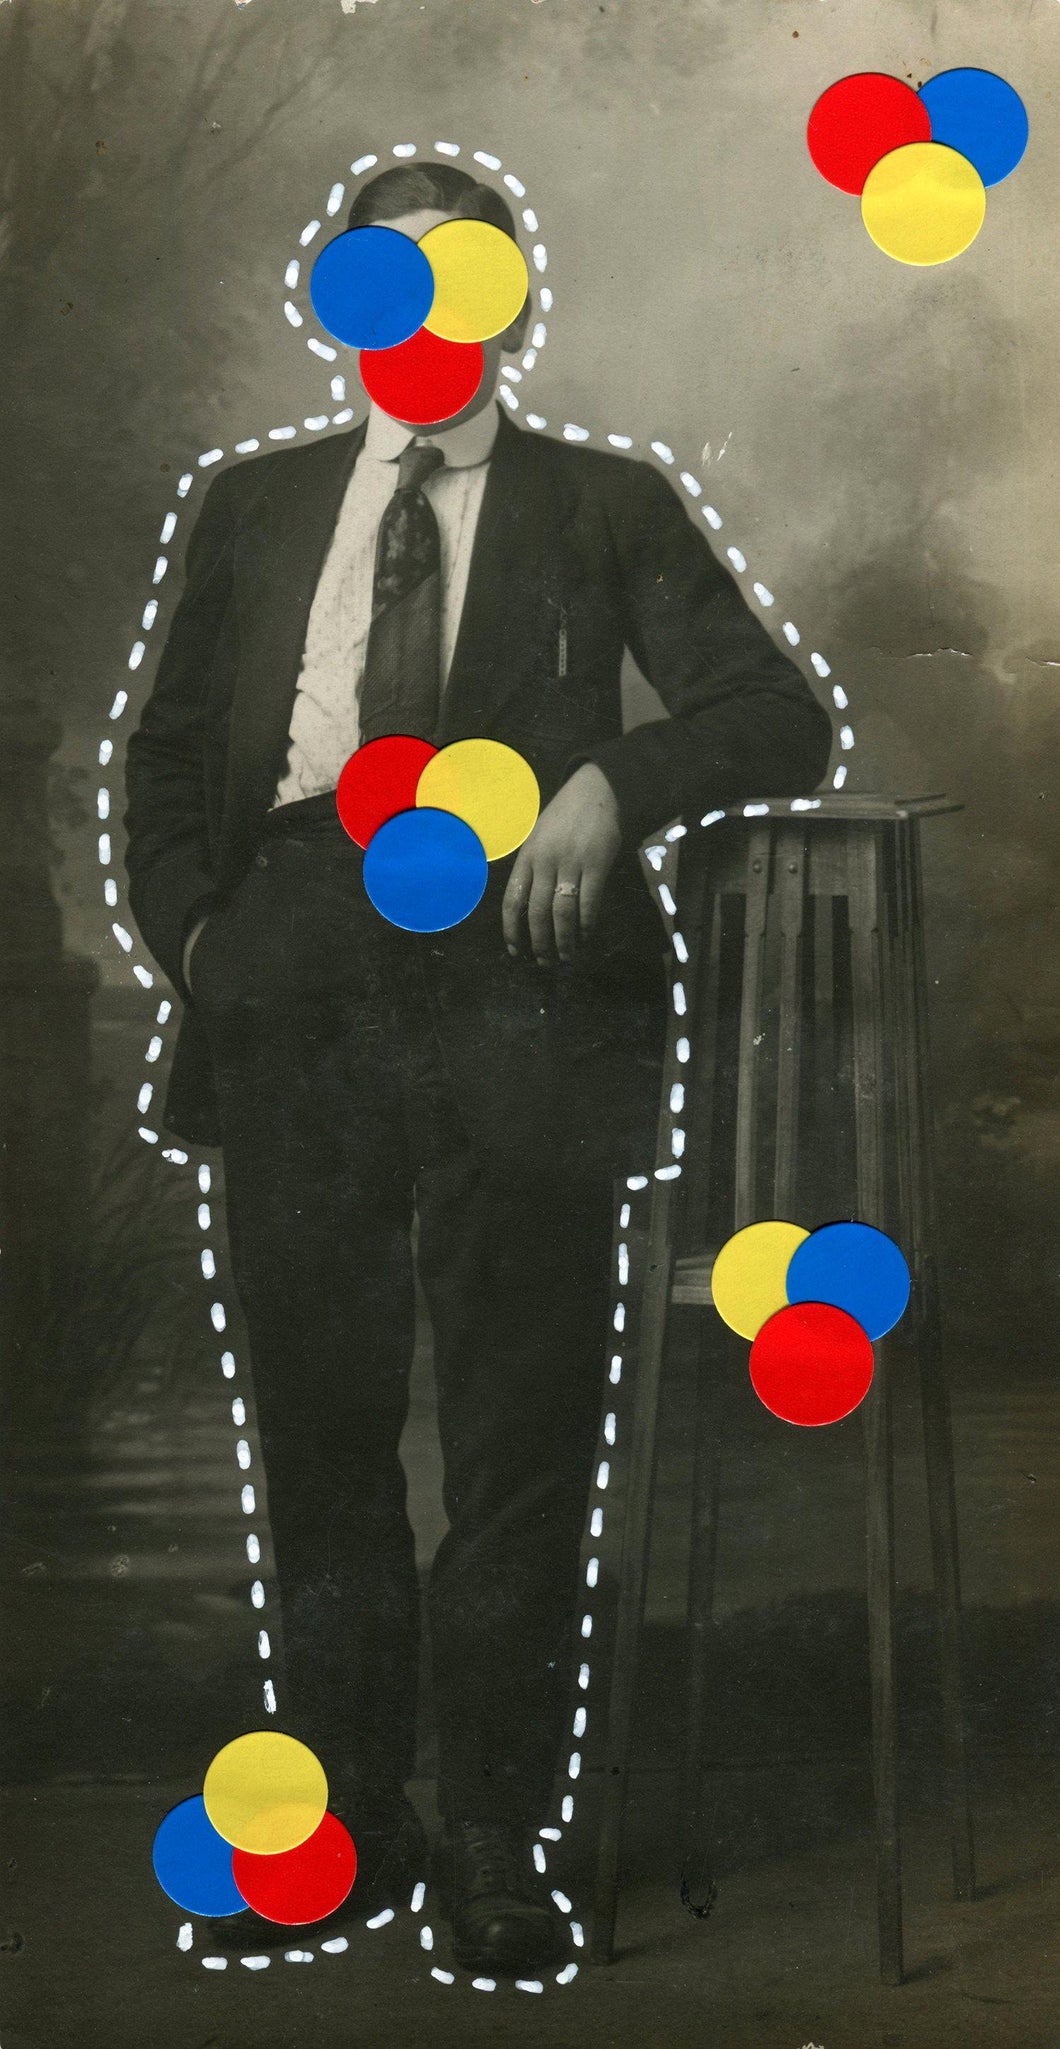 Primary Colours Palette Decoration On Vintage Man Portrait Photo - Naomi Vona Art